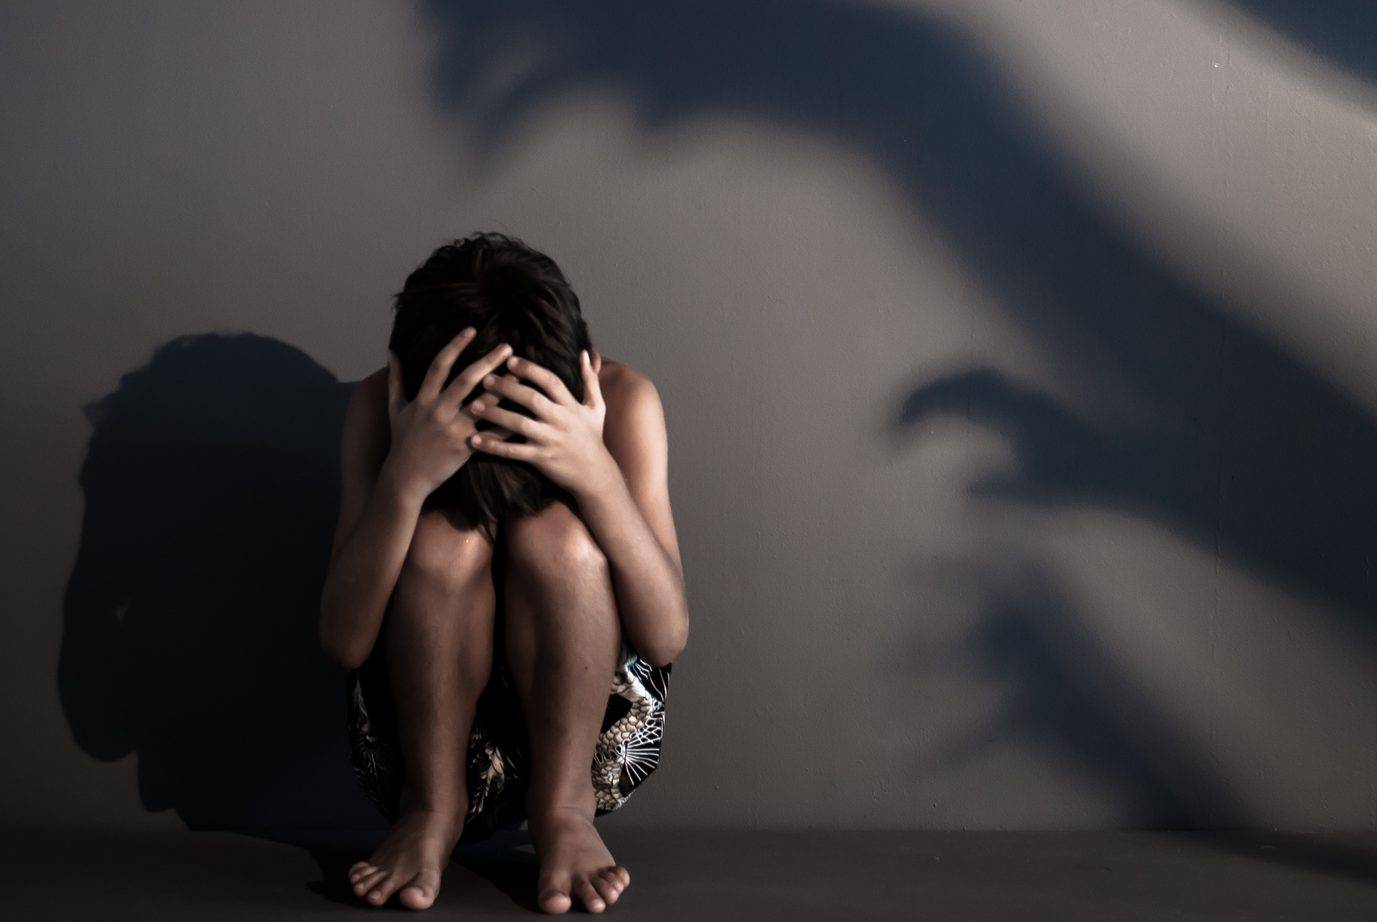 Garoto britânico de 13 anos sofre abuso sexual de 21 homens